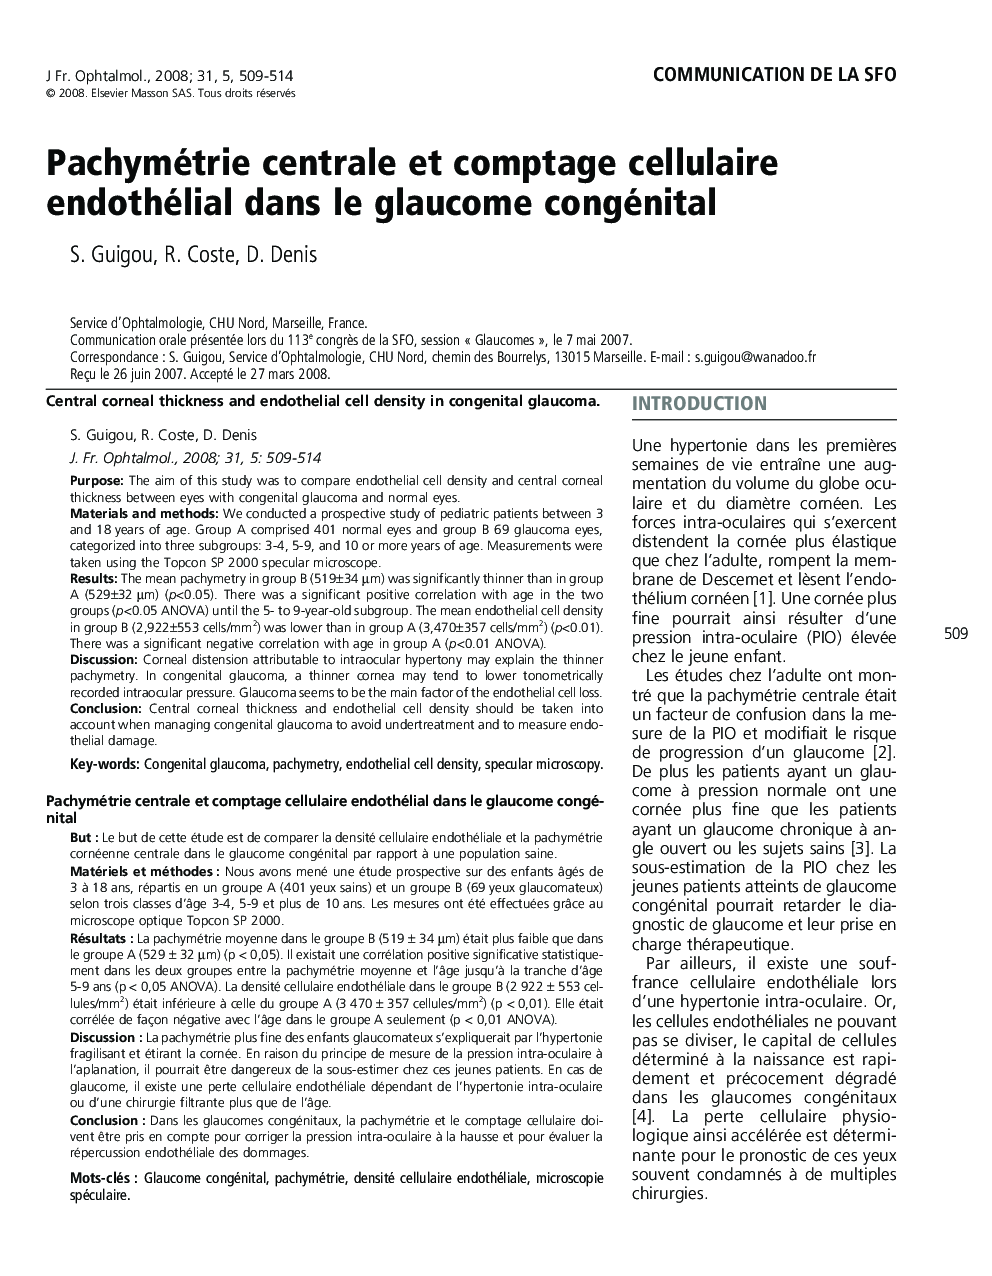 Pachymétrie centrale et comptage cellulaireendothélial dans le glaucome congénital